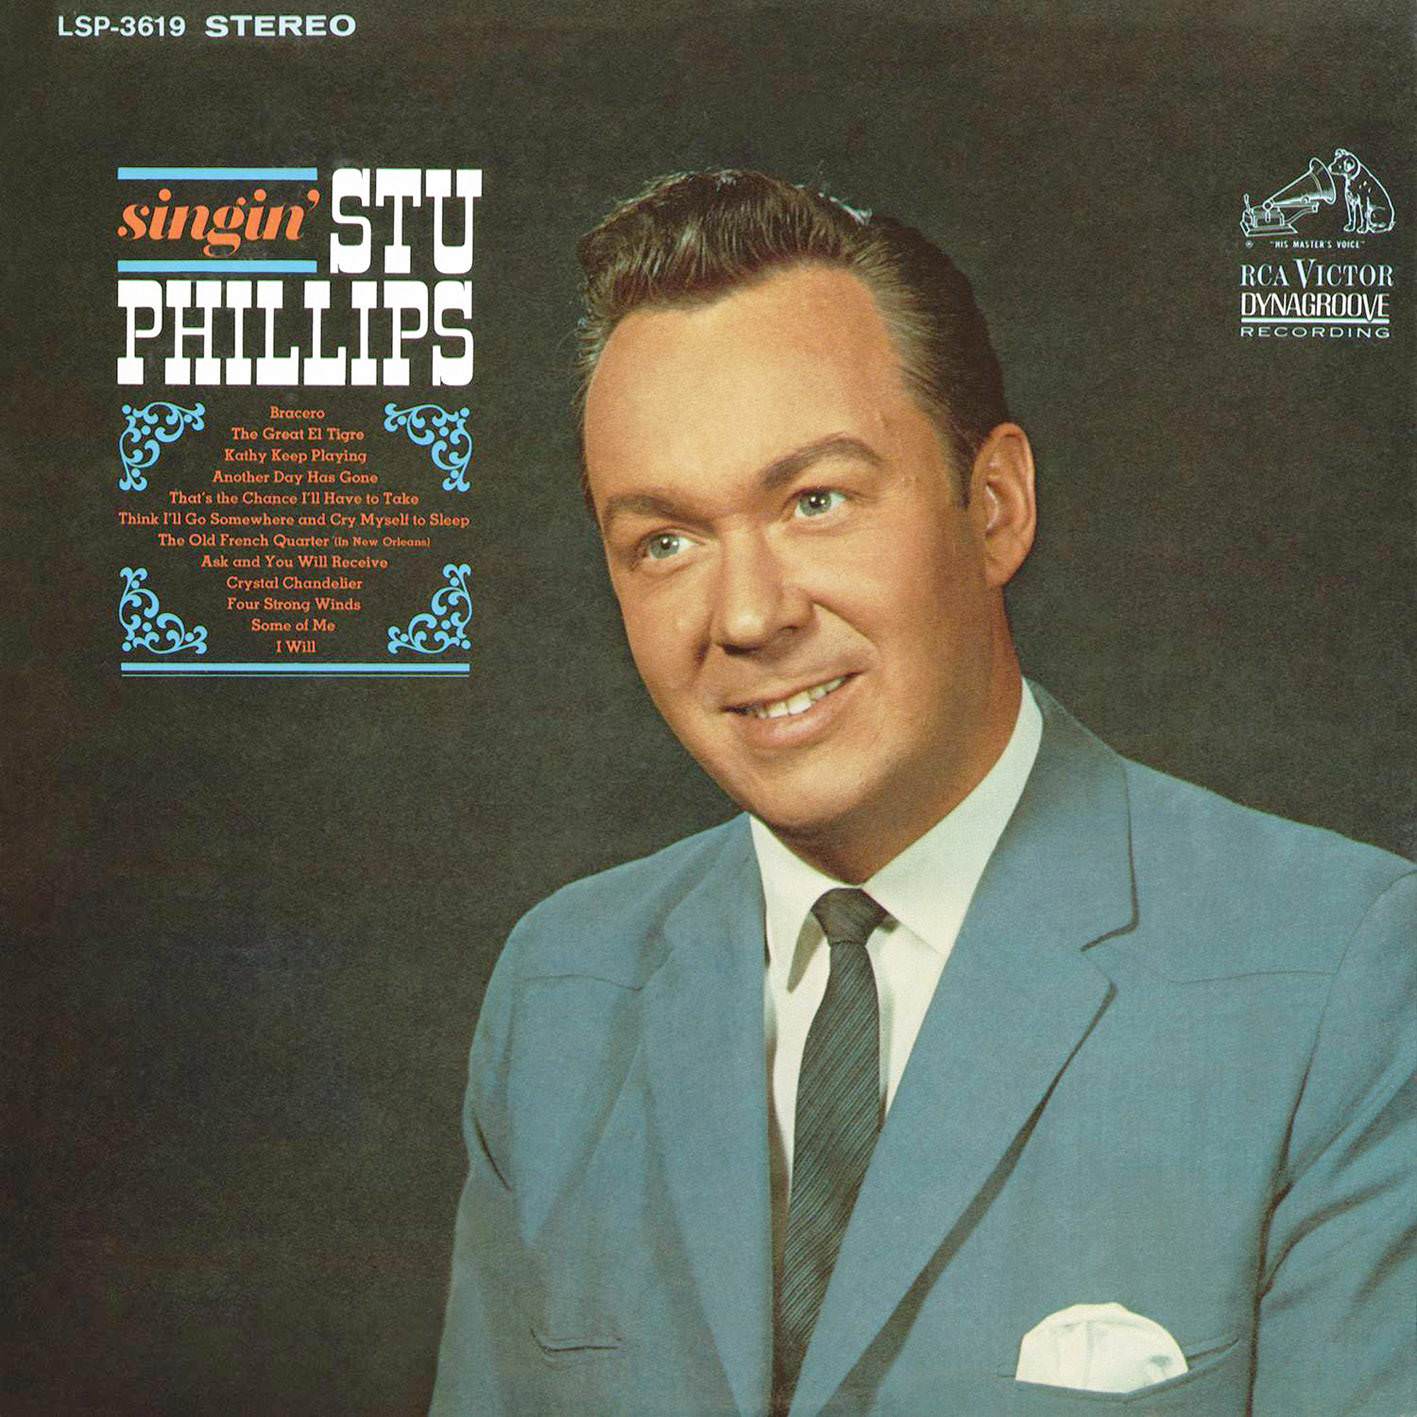 Stu Phillips - Singin’ Stu Phillips (1966/2016) [AcousticSounds FLAC 24bit/192kHz]